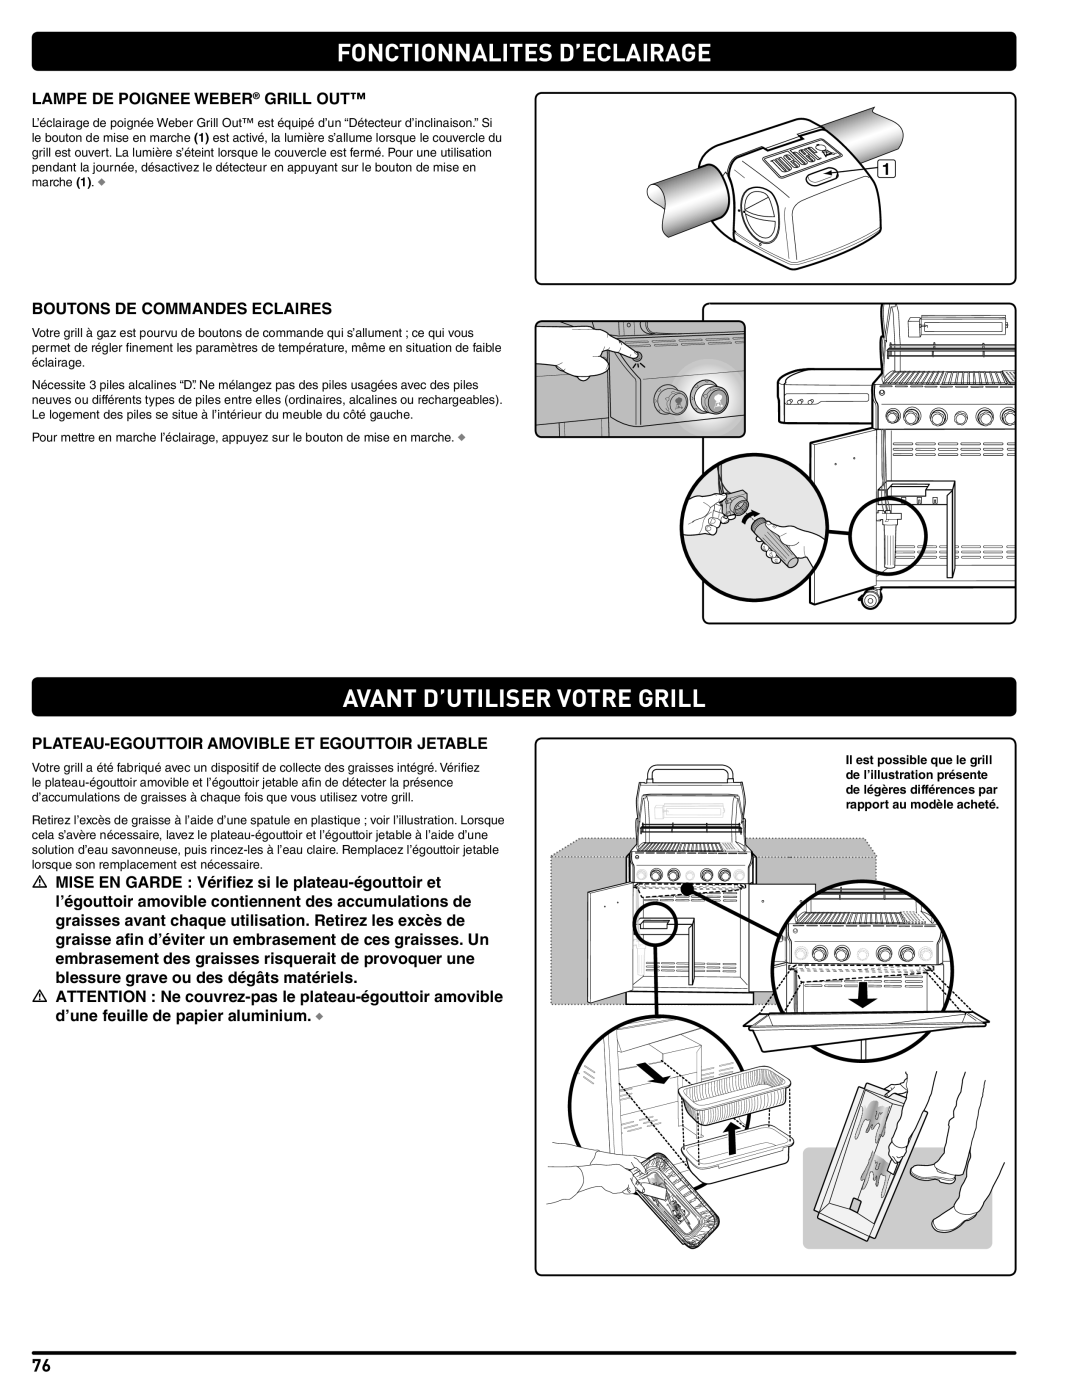 Weber 56576 manual Fonctionnalites D’Eclairage, Avant D’Utiliser Votre Grill, Lampe De Poignee Weber Grill Out 